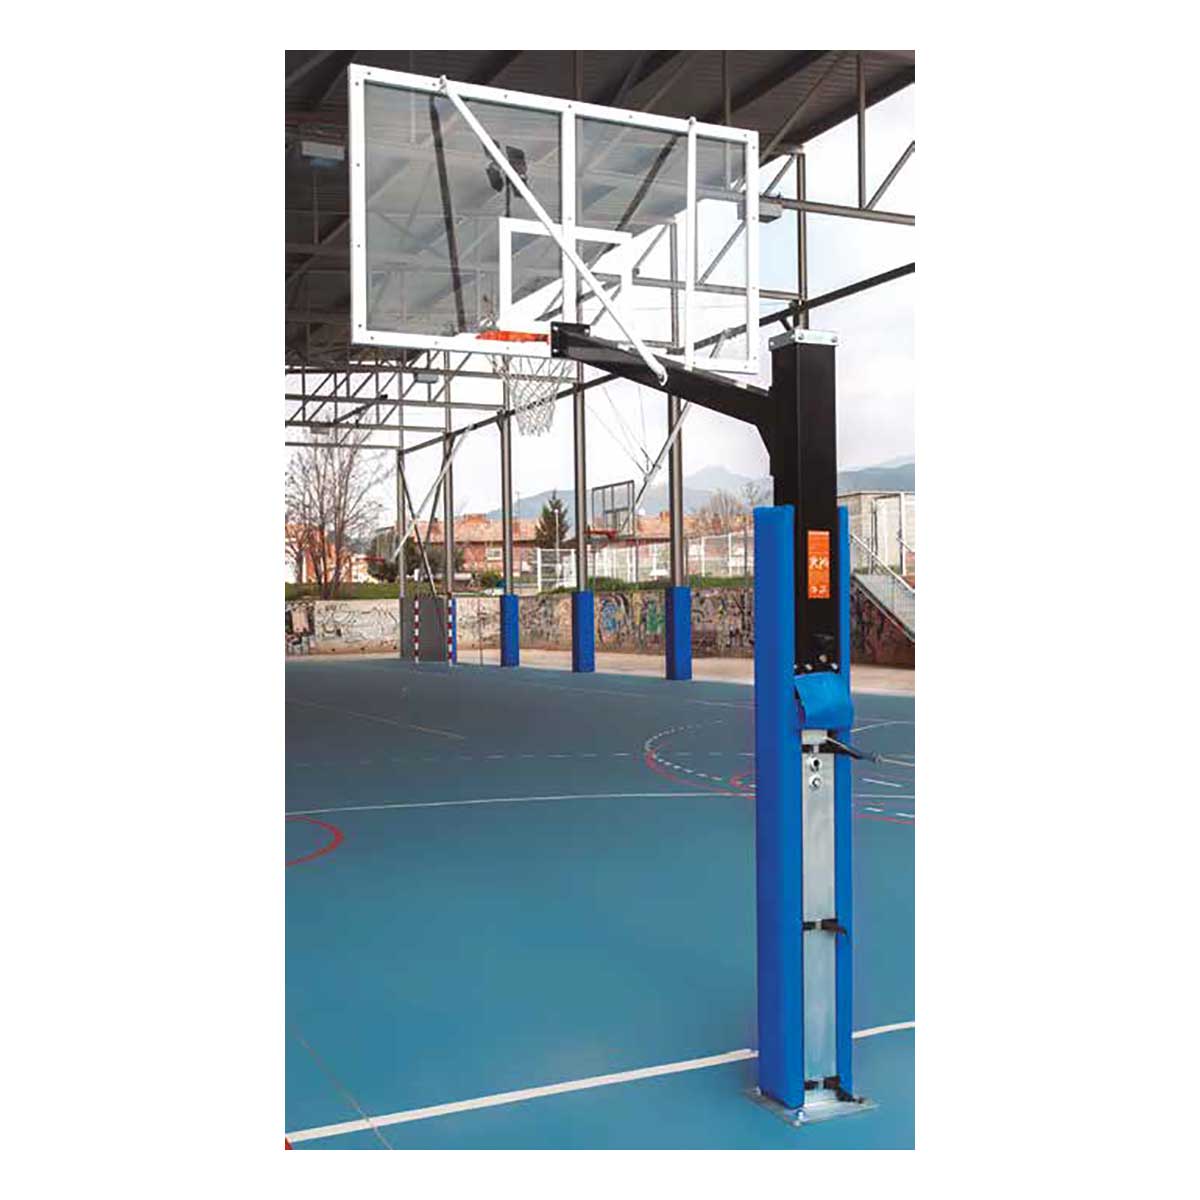 Canasta baloncesto fija tablero metacrilato incoloro extensión 125 cm  BF12521-1 - ESTEBAN SG&E